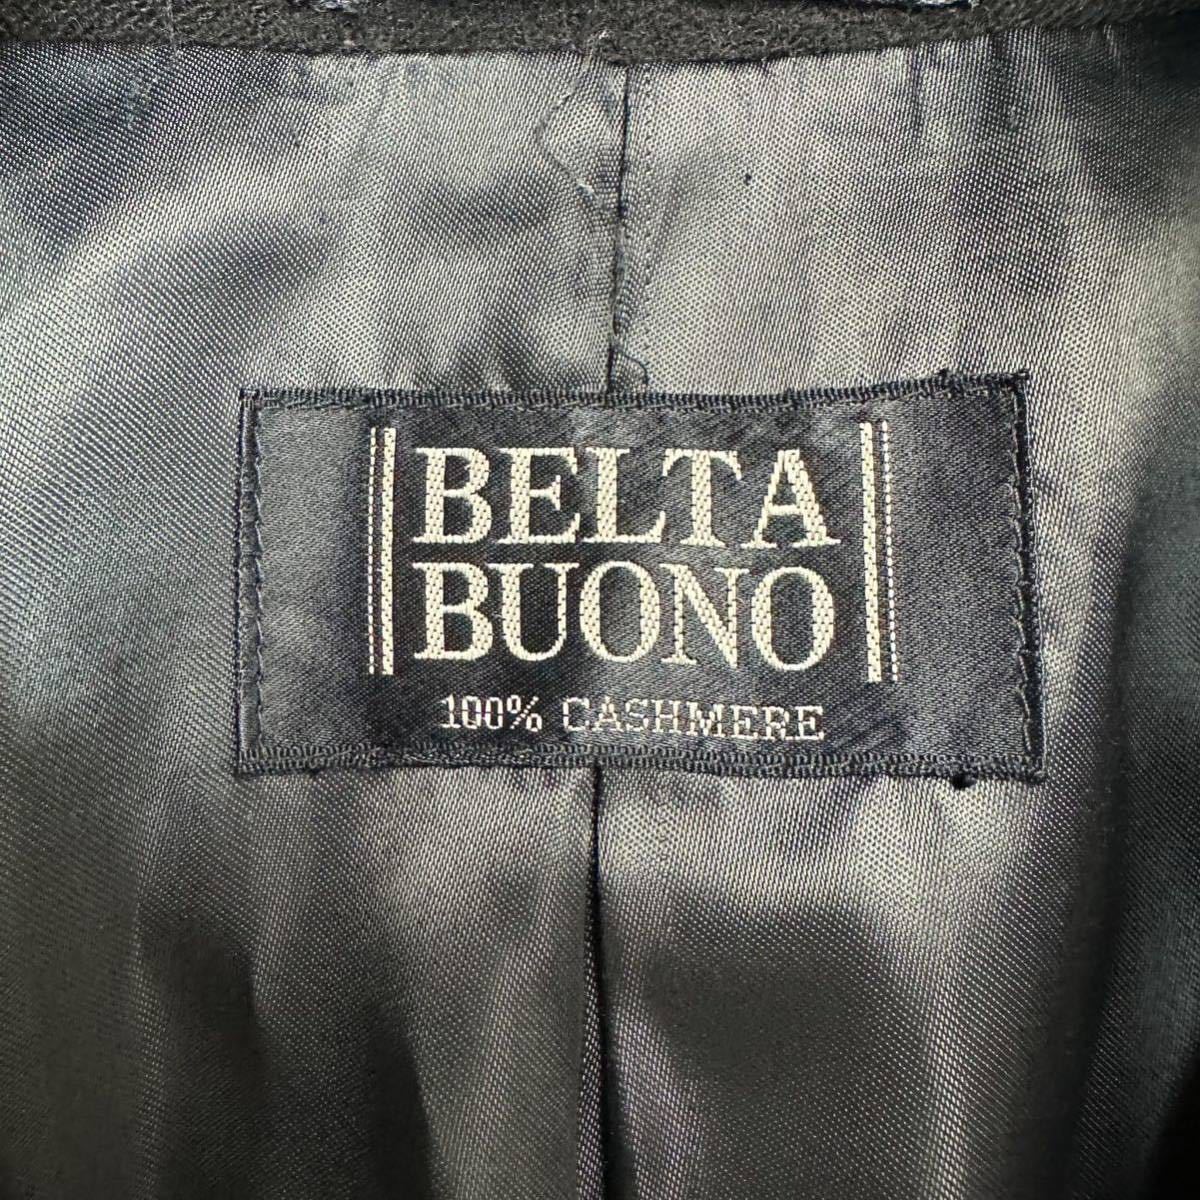 ベルタボーノ 【極上の滑らかさ】 BELTA BUONO ステンカラーコート カシミヤ100% 実寸XL相当 ブラック センターベント_画像7